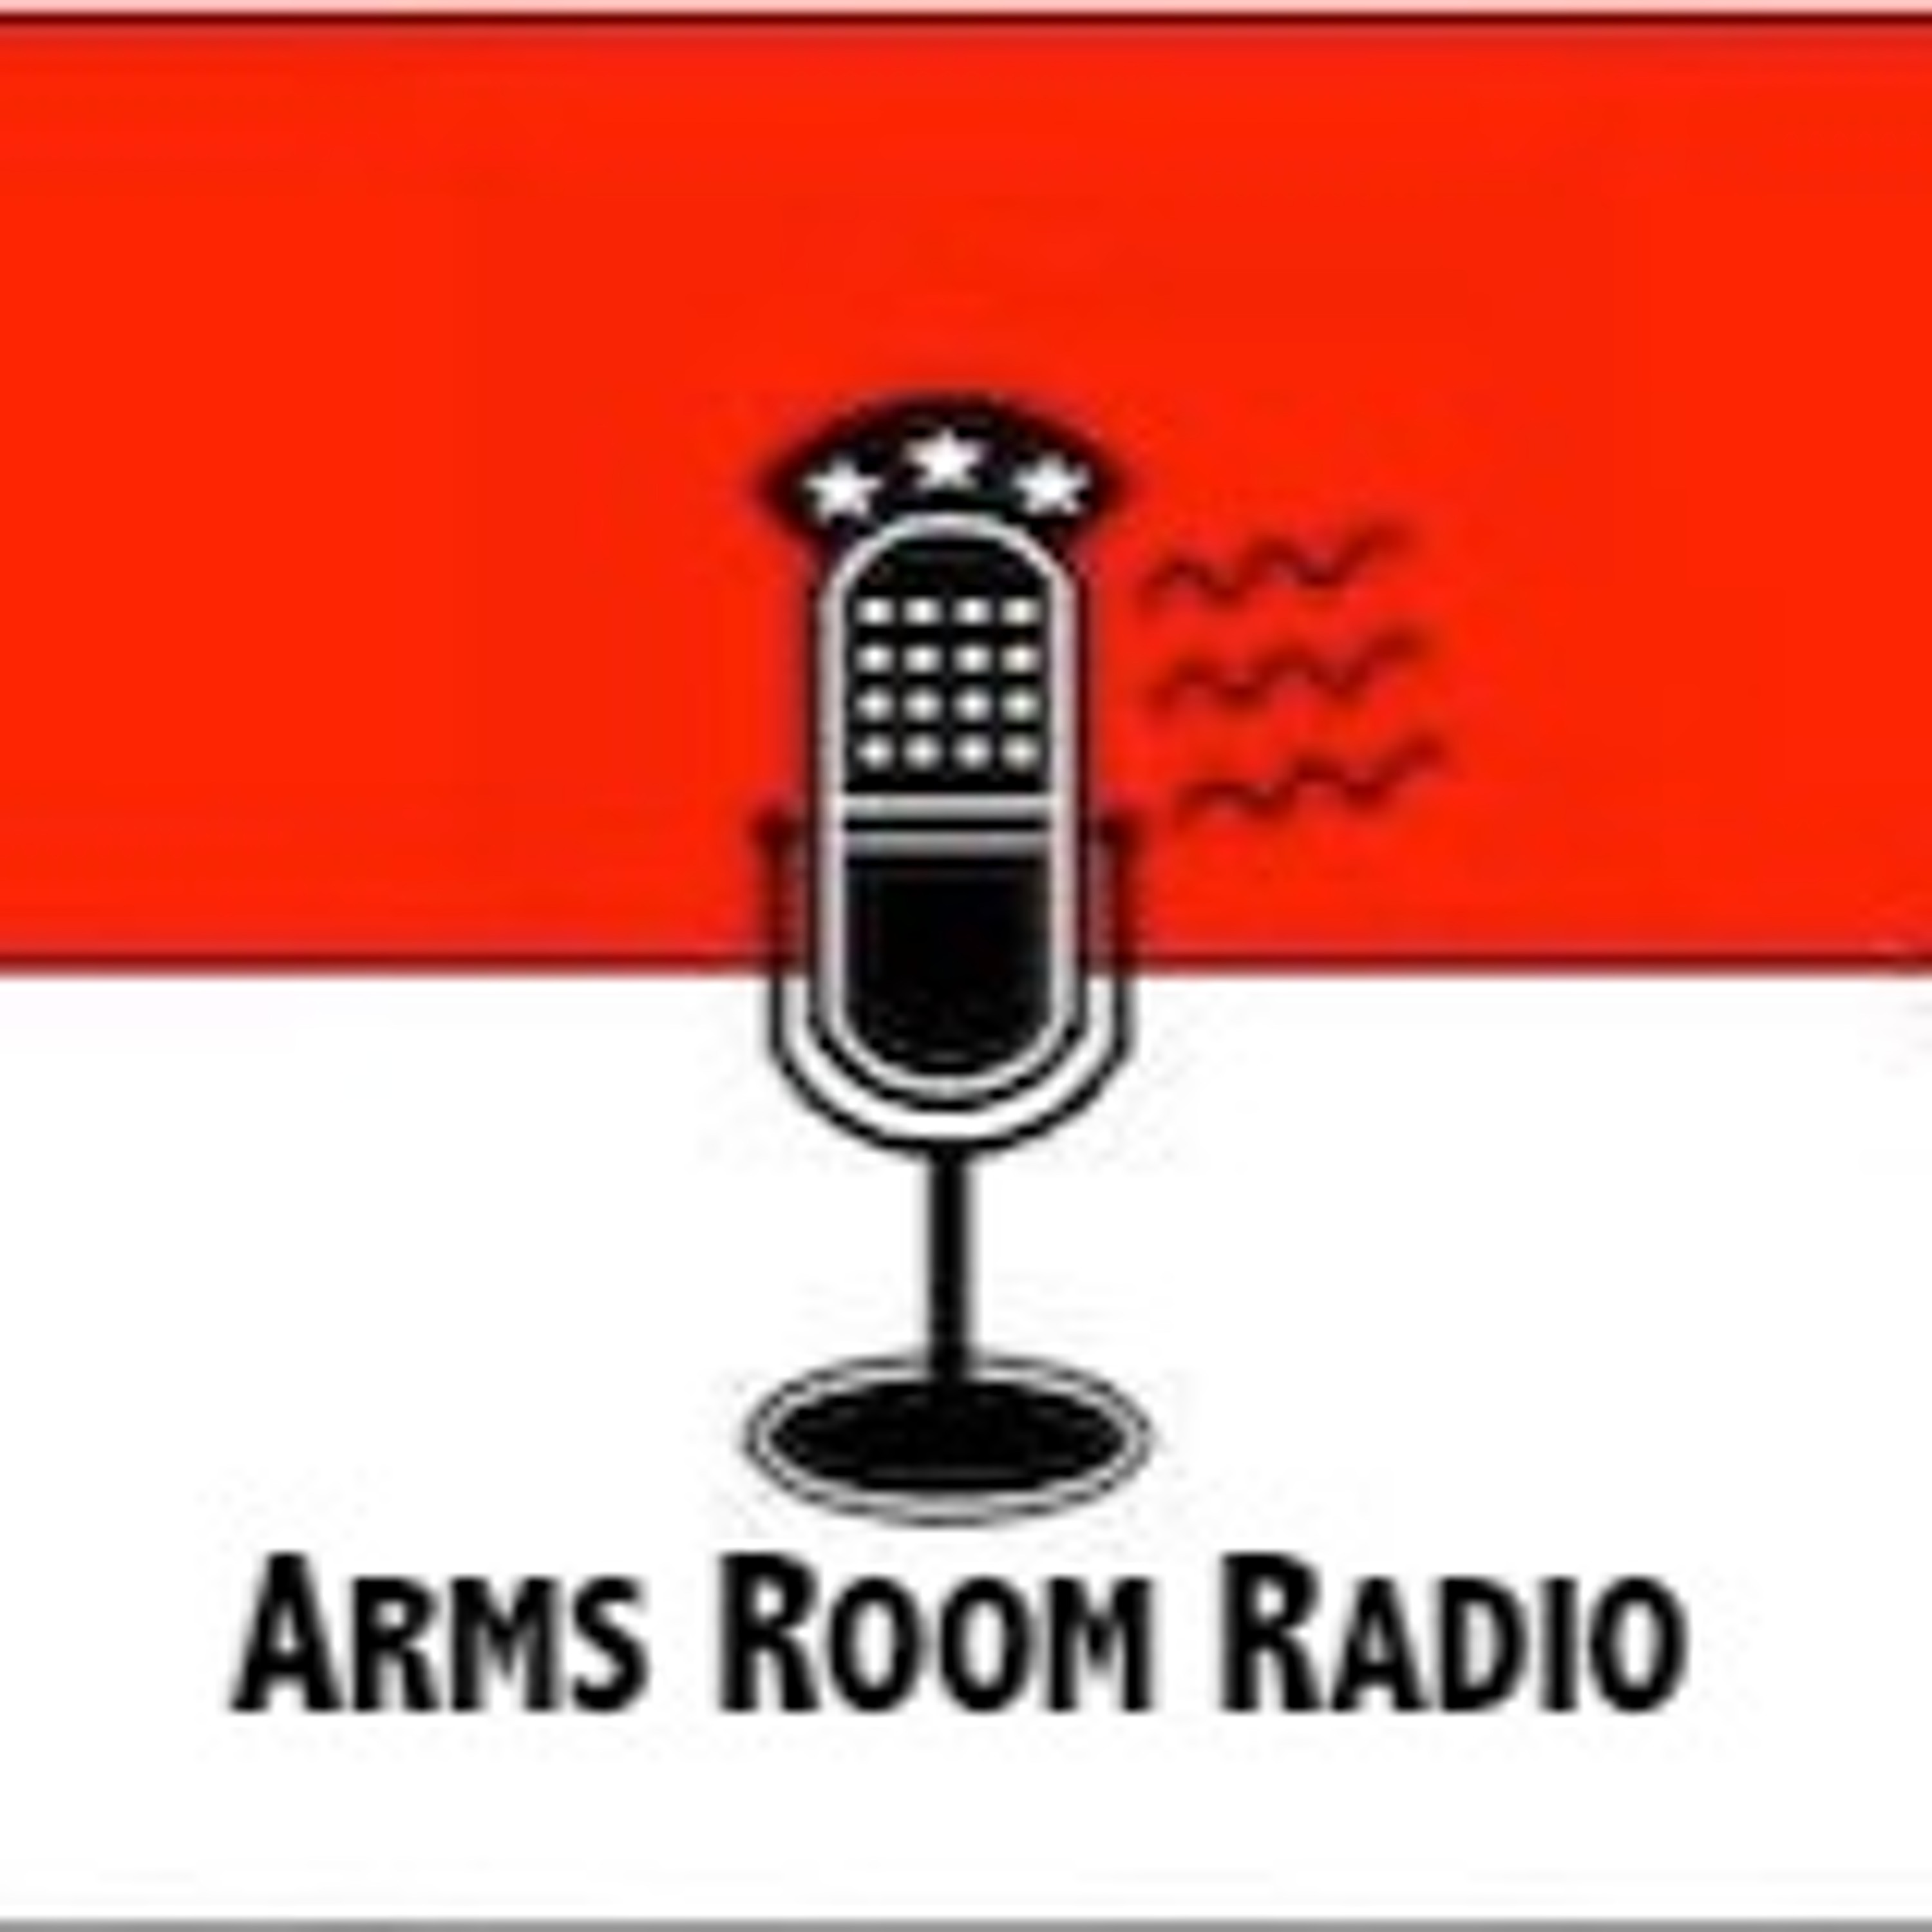 ArmsRoomRadio 08.24.19 Cigarz and Hogg